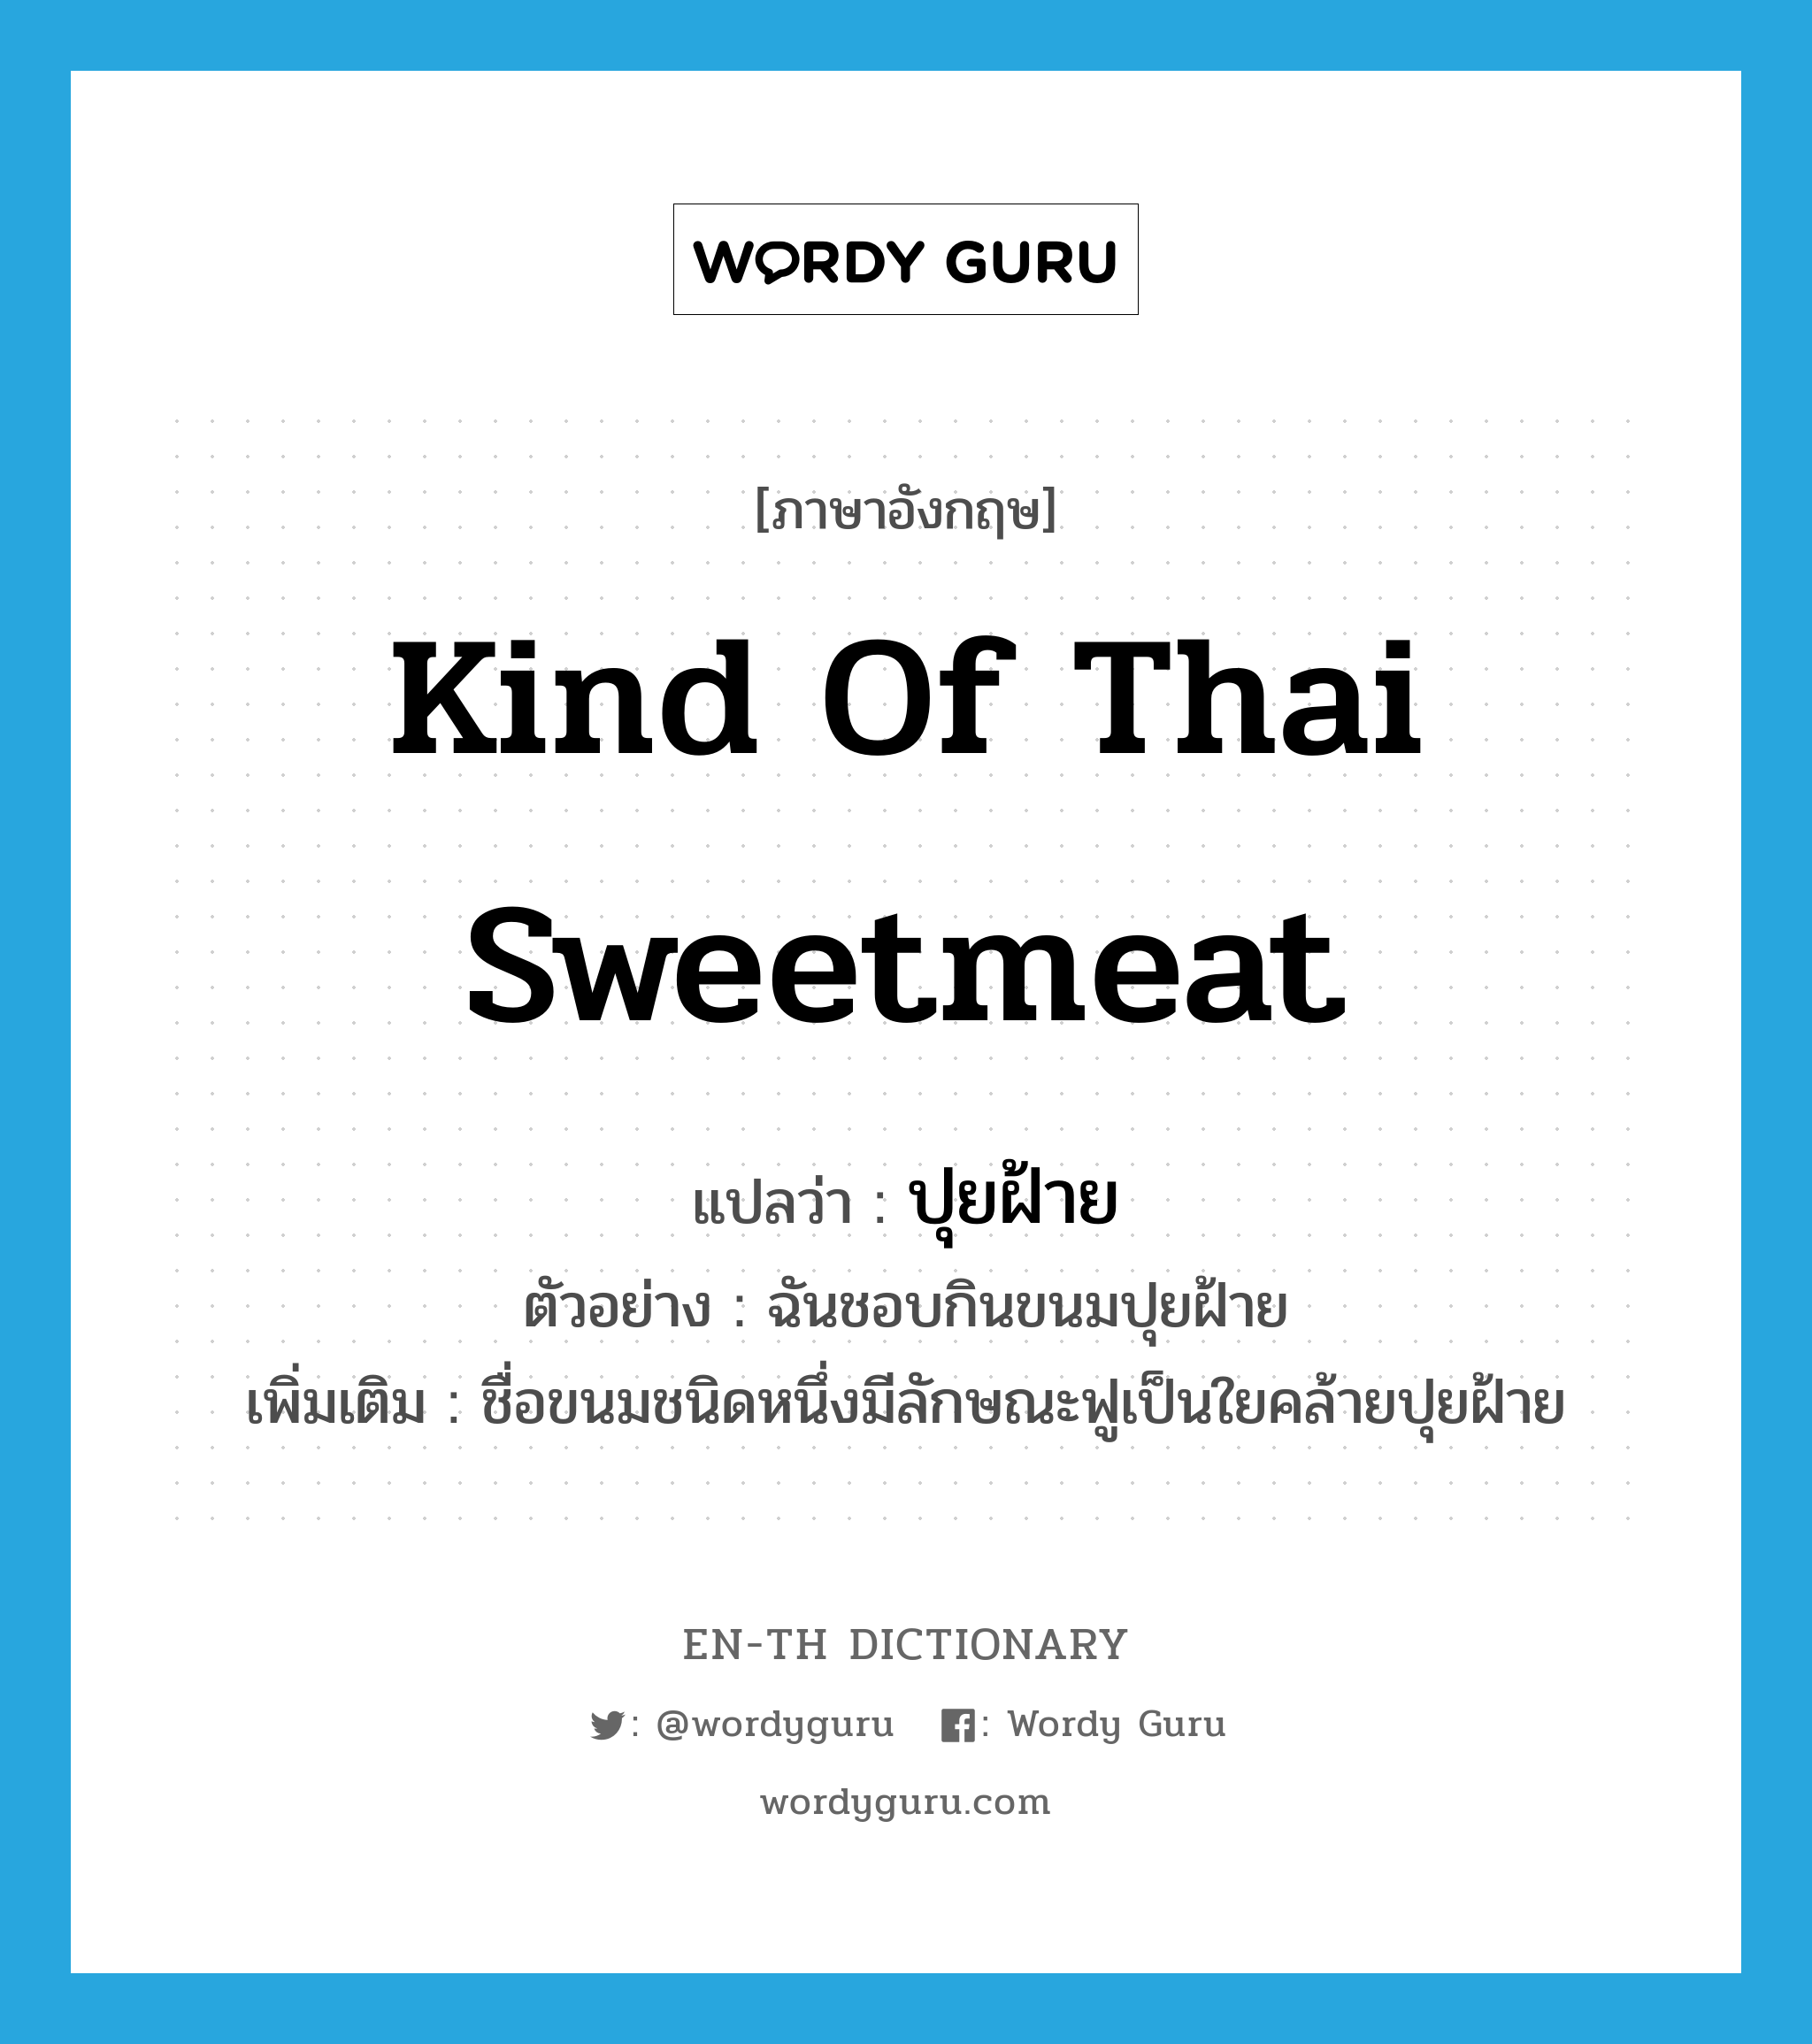 kind of Thai sweetmeat แปลว่า?, คำศัพท์ภาษาอังกฤษ kind of Thai sweetmeat แปลว่า ปุยฝ้าย ประเภท N ตัวอย่าง ฉันชอบกินขนมปุยฝ้าย เพิ่มเติม ชื่อขนมชนิดหนึ่งมีลักษณะฟูเป็นใยคล้ายปุยฝ้าย หมวด N